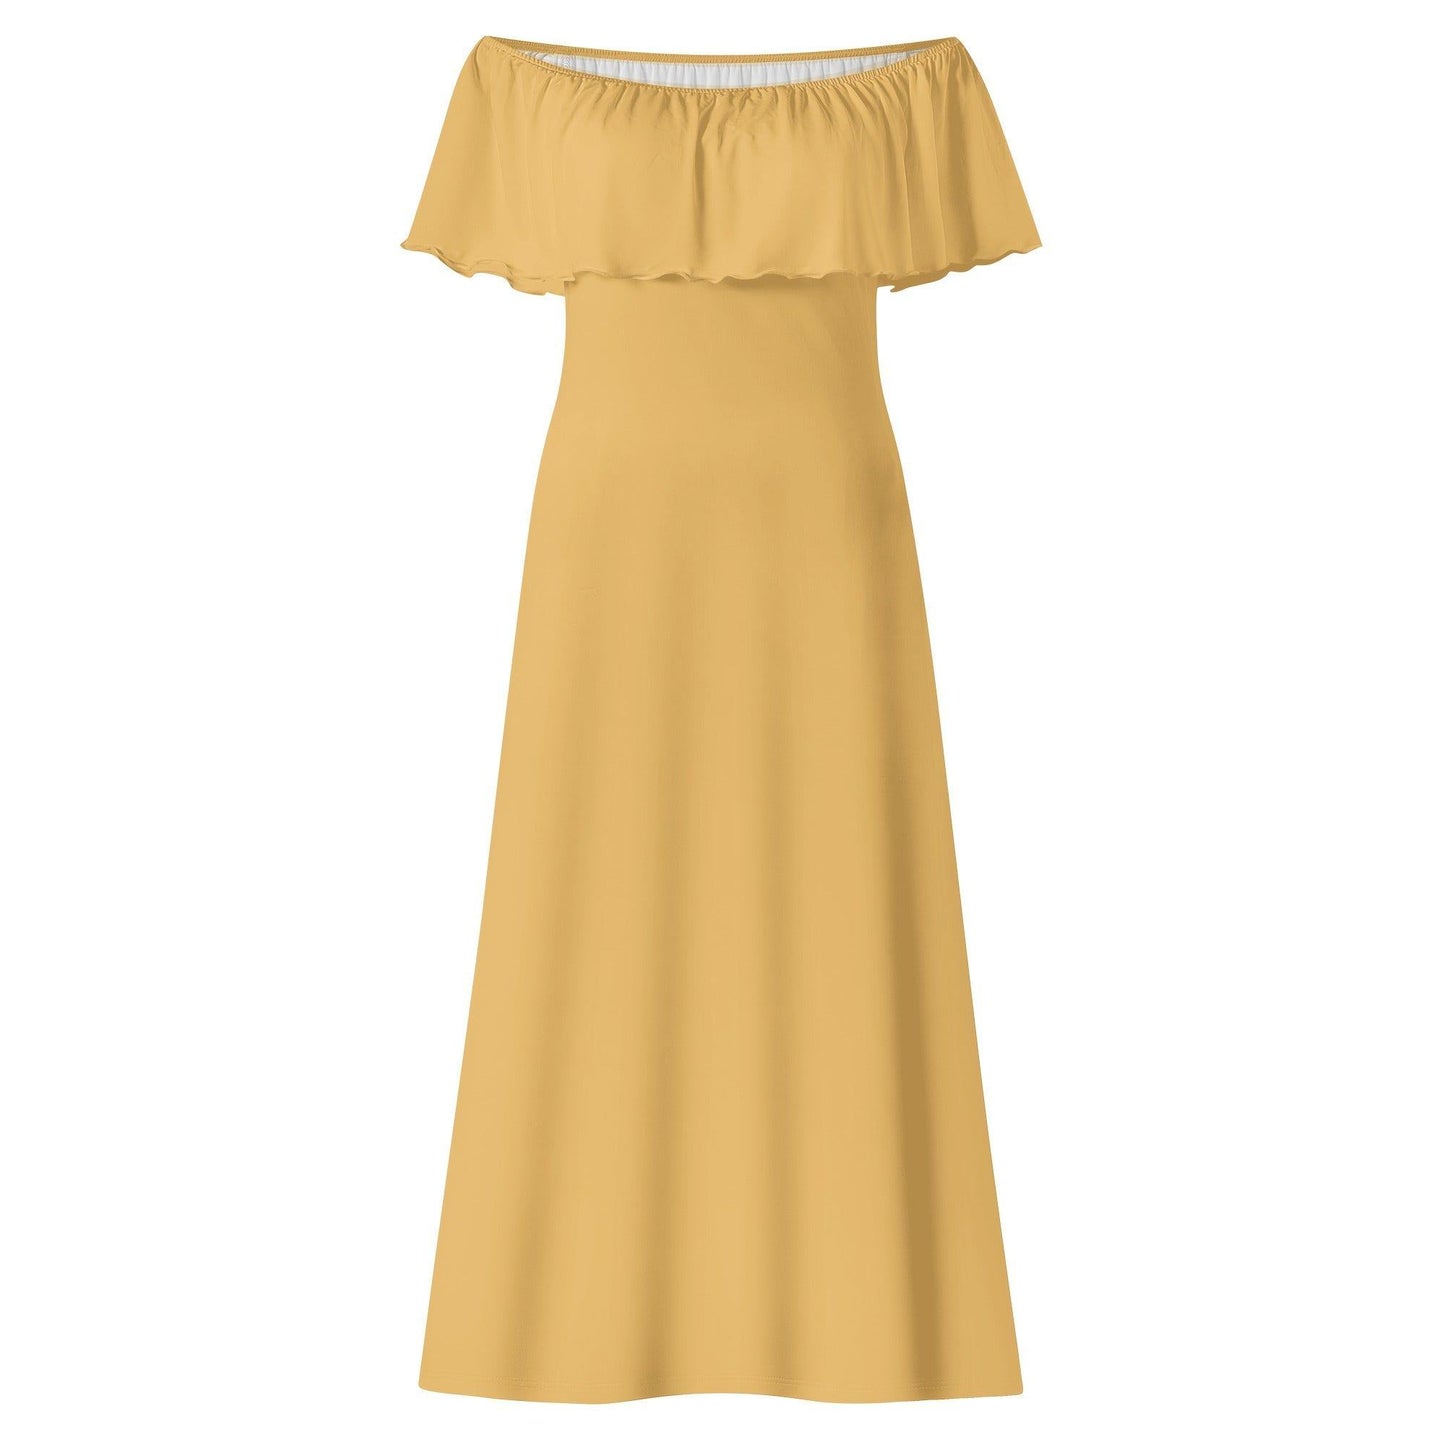 Langes schulterfreies Harvest Gold Kleid mit lockerem Oberteil Off-Shoulder-Kleid 73.99 Gold, Harvest, Kleid, Lang, locker, Oberteil, Schulterfrei JLR Design